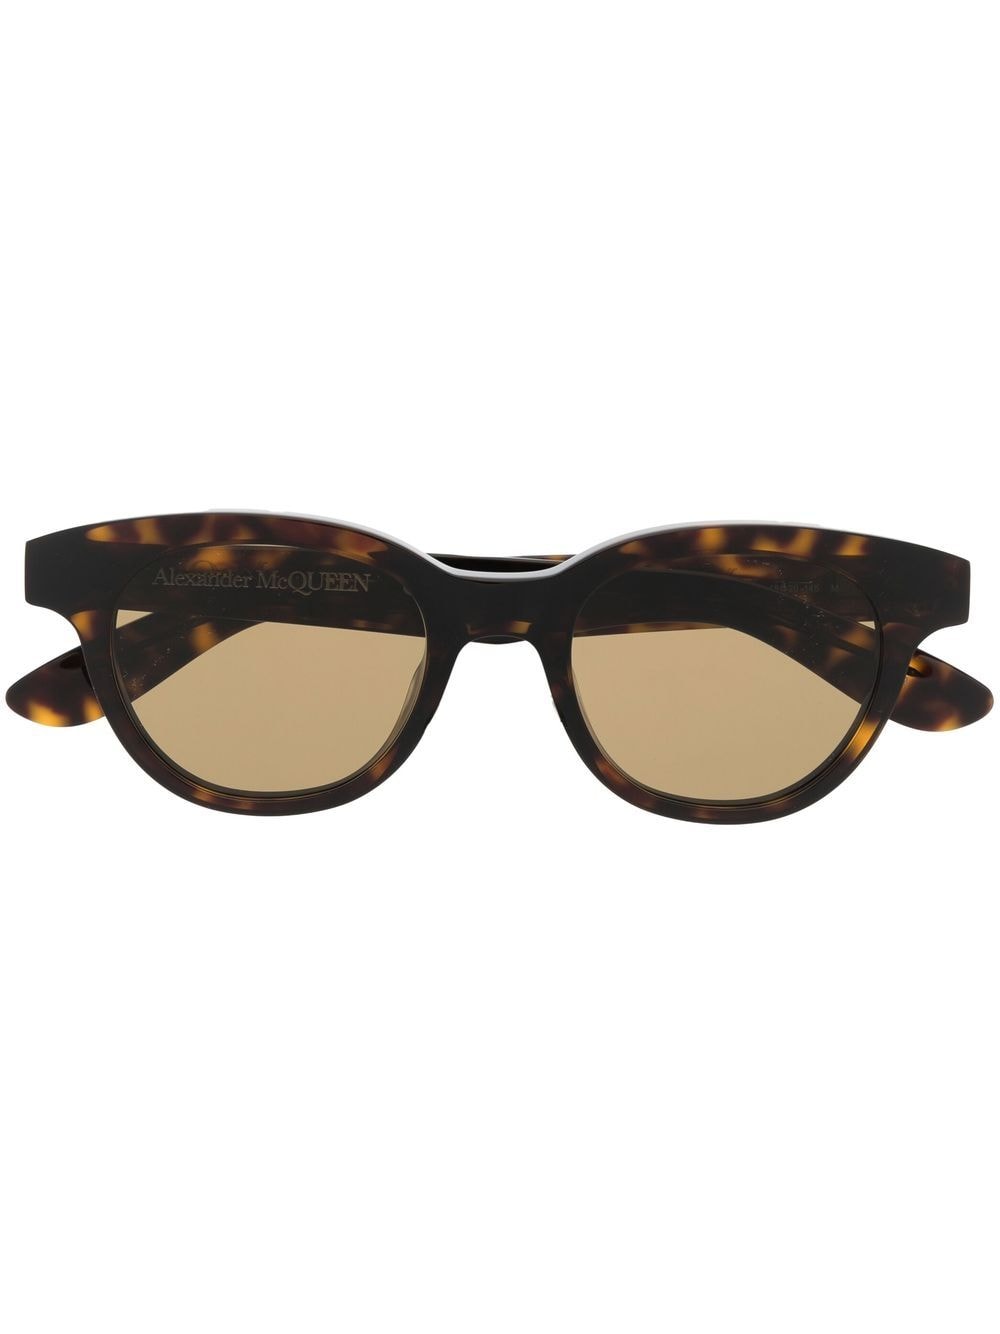 Alexander McQueen Eyewear tortoiseshell square-frame sunglasses - Brown von Alexander McQueen Eyewear